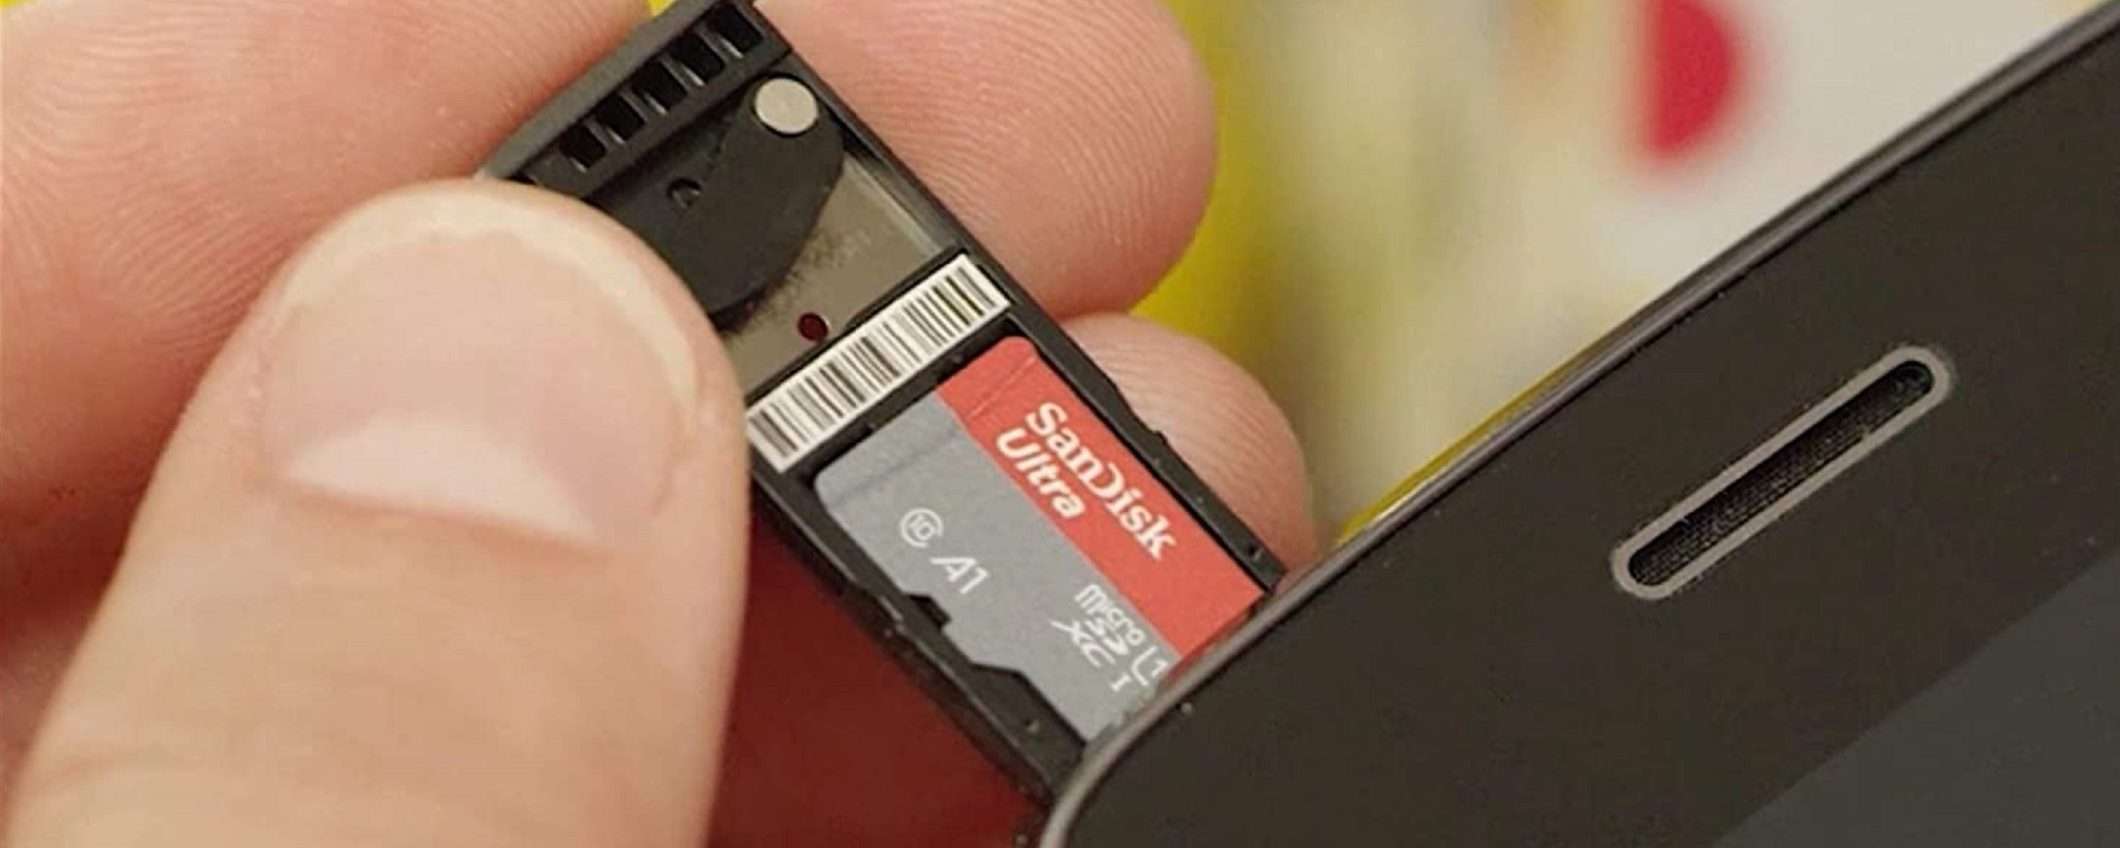 MicroSDXC SanDisk Ultra da 128GB con adattatore SD a soli 18€ su Amazon